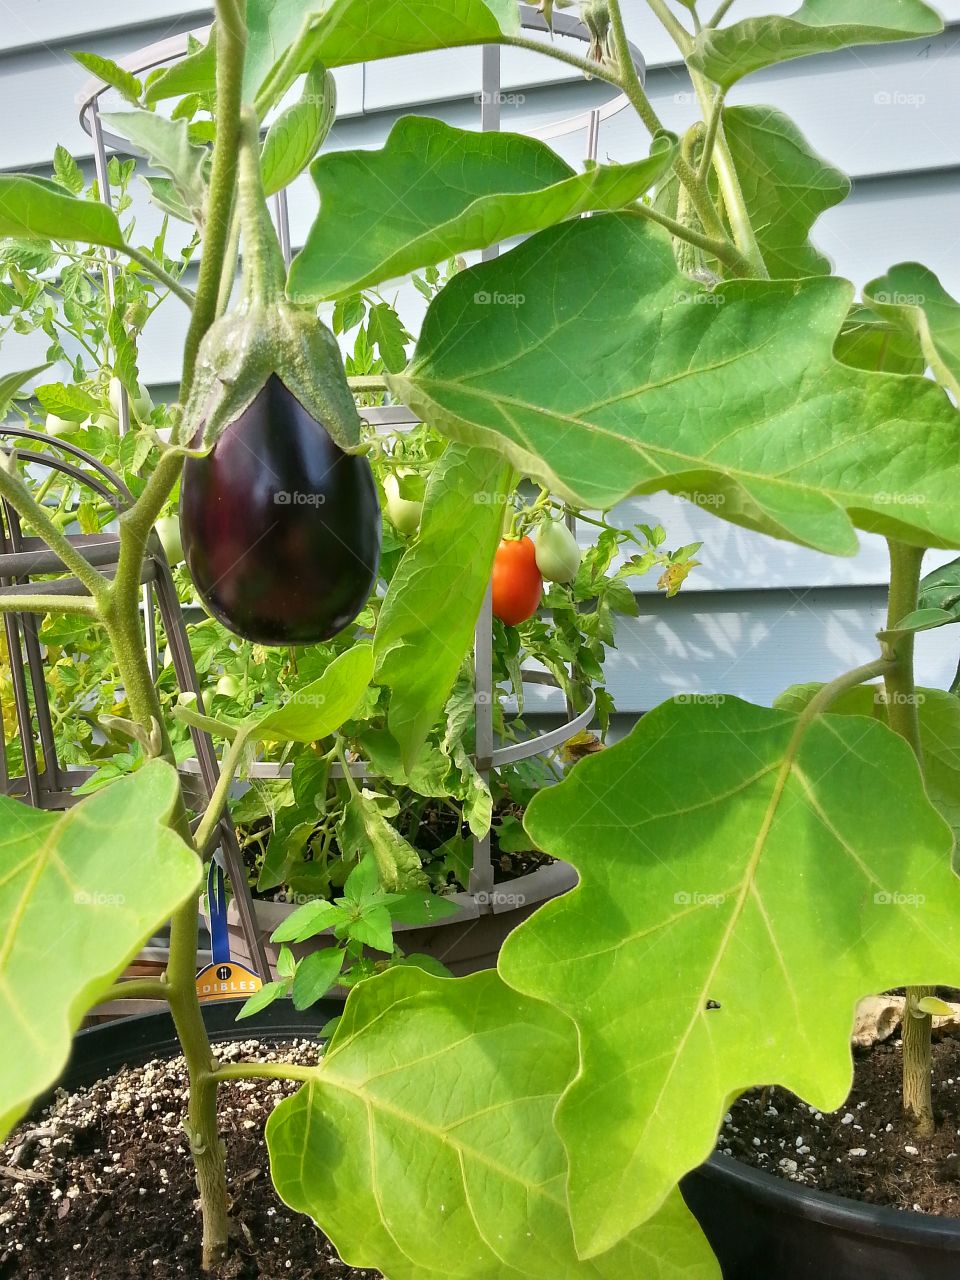 Eggplant and Plum Tomato